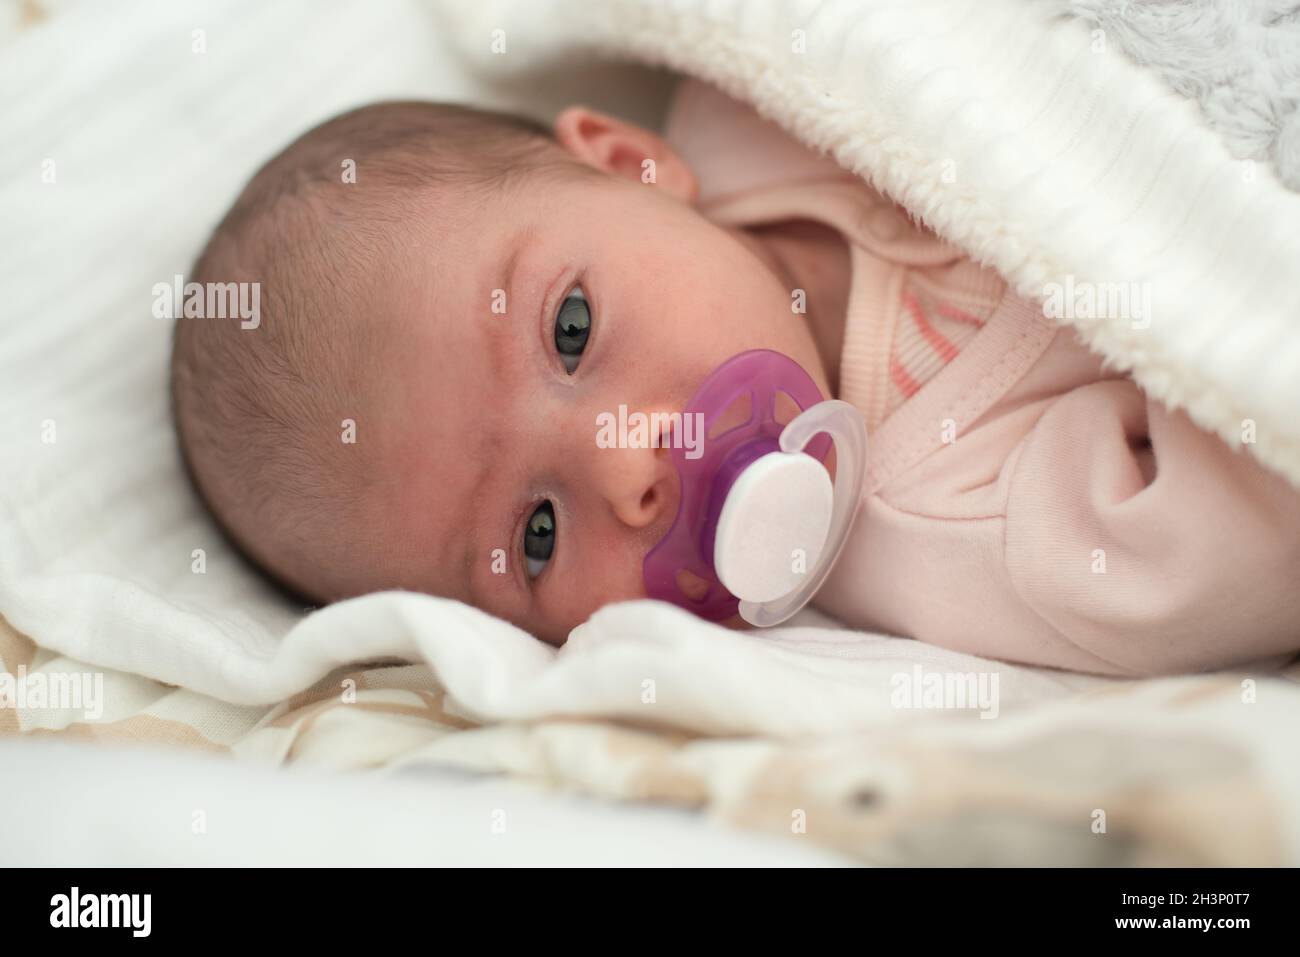 Neonato Baby Ritratto, bellissimo succhietto Kid New Born. Foto Stock